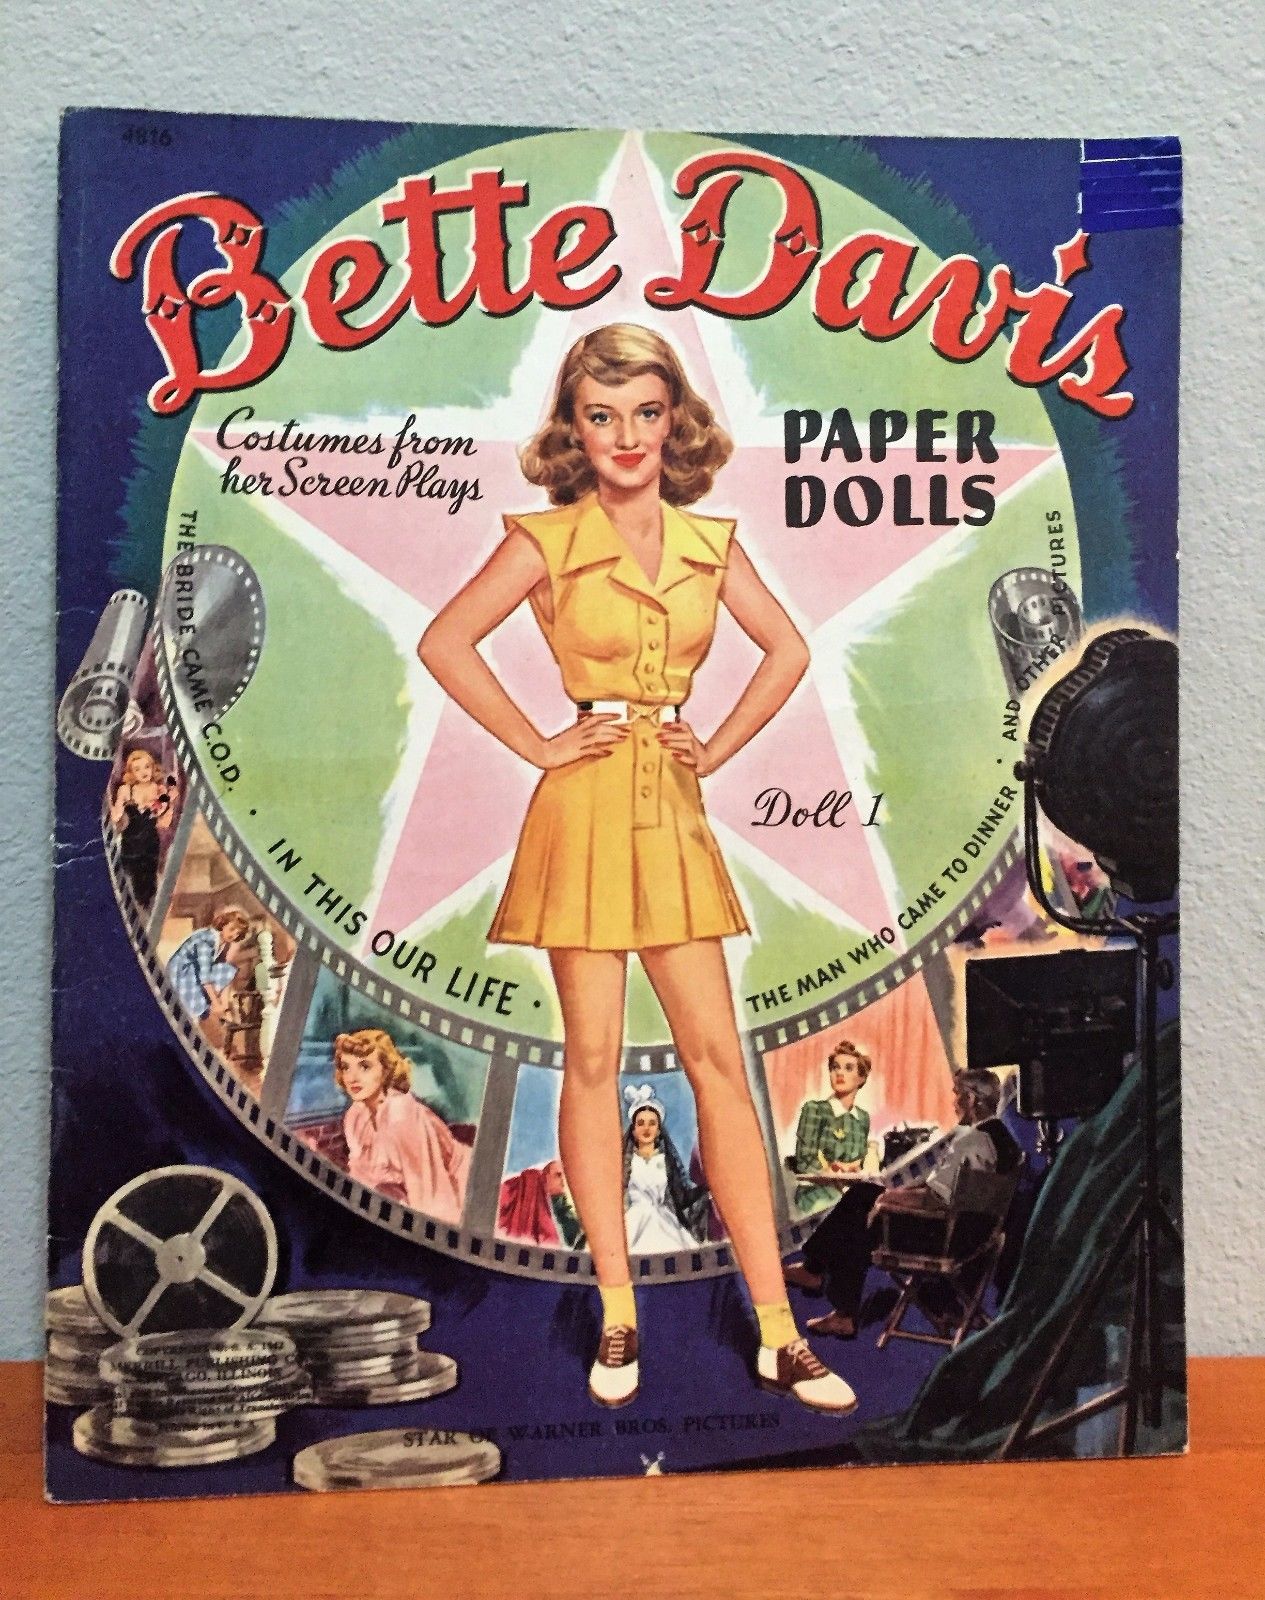 ORIGINAL 1942 Bette Davis - Paper Doll Book UNCUT